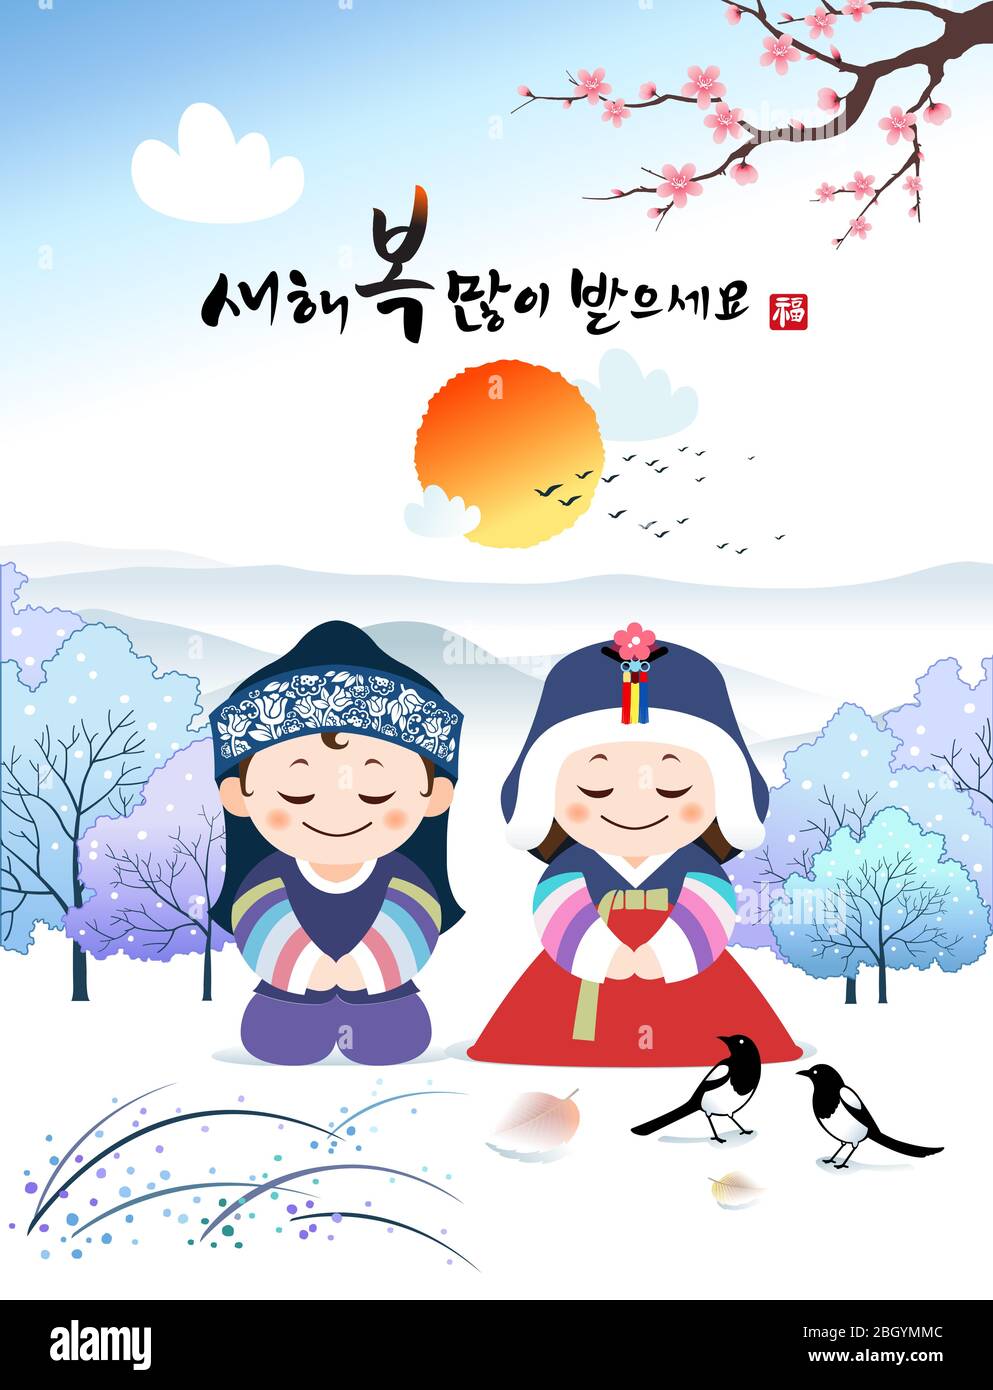 Frohes neues Jahr, Übersetzung des Koreanischen Textes: Frohes neues Jahr, Kalligraphie und koreanische traditionelle Kinder begrüßen. Korea Winterlandschaft und Sonnenaufgang. Stock Vektor